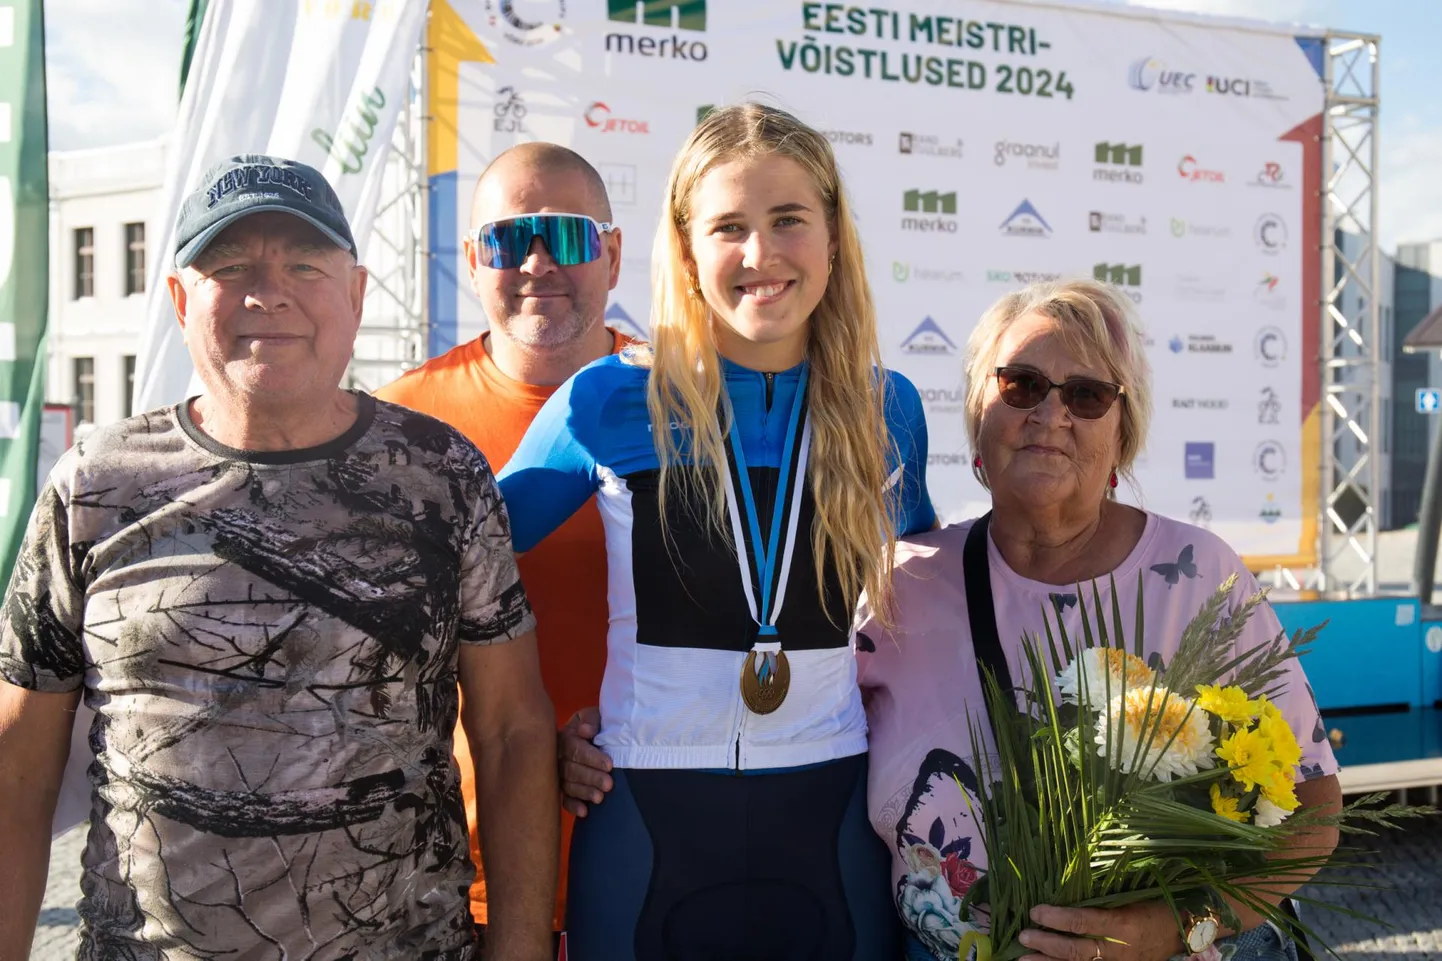 Laura Lizette Sander jättis Eesti meistrivõistlustel kõik kullad ja sinimustvalge särgi endale.